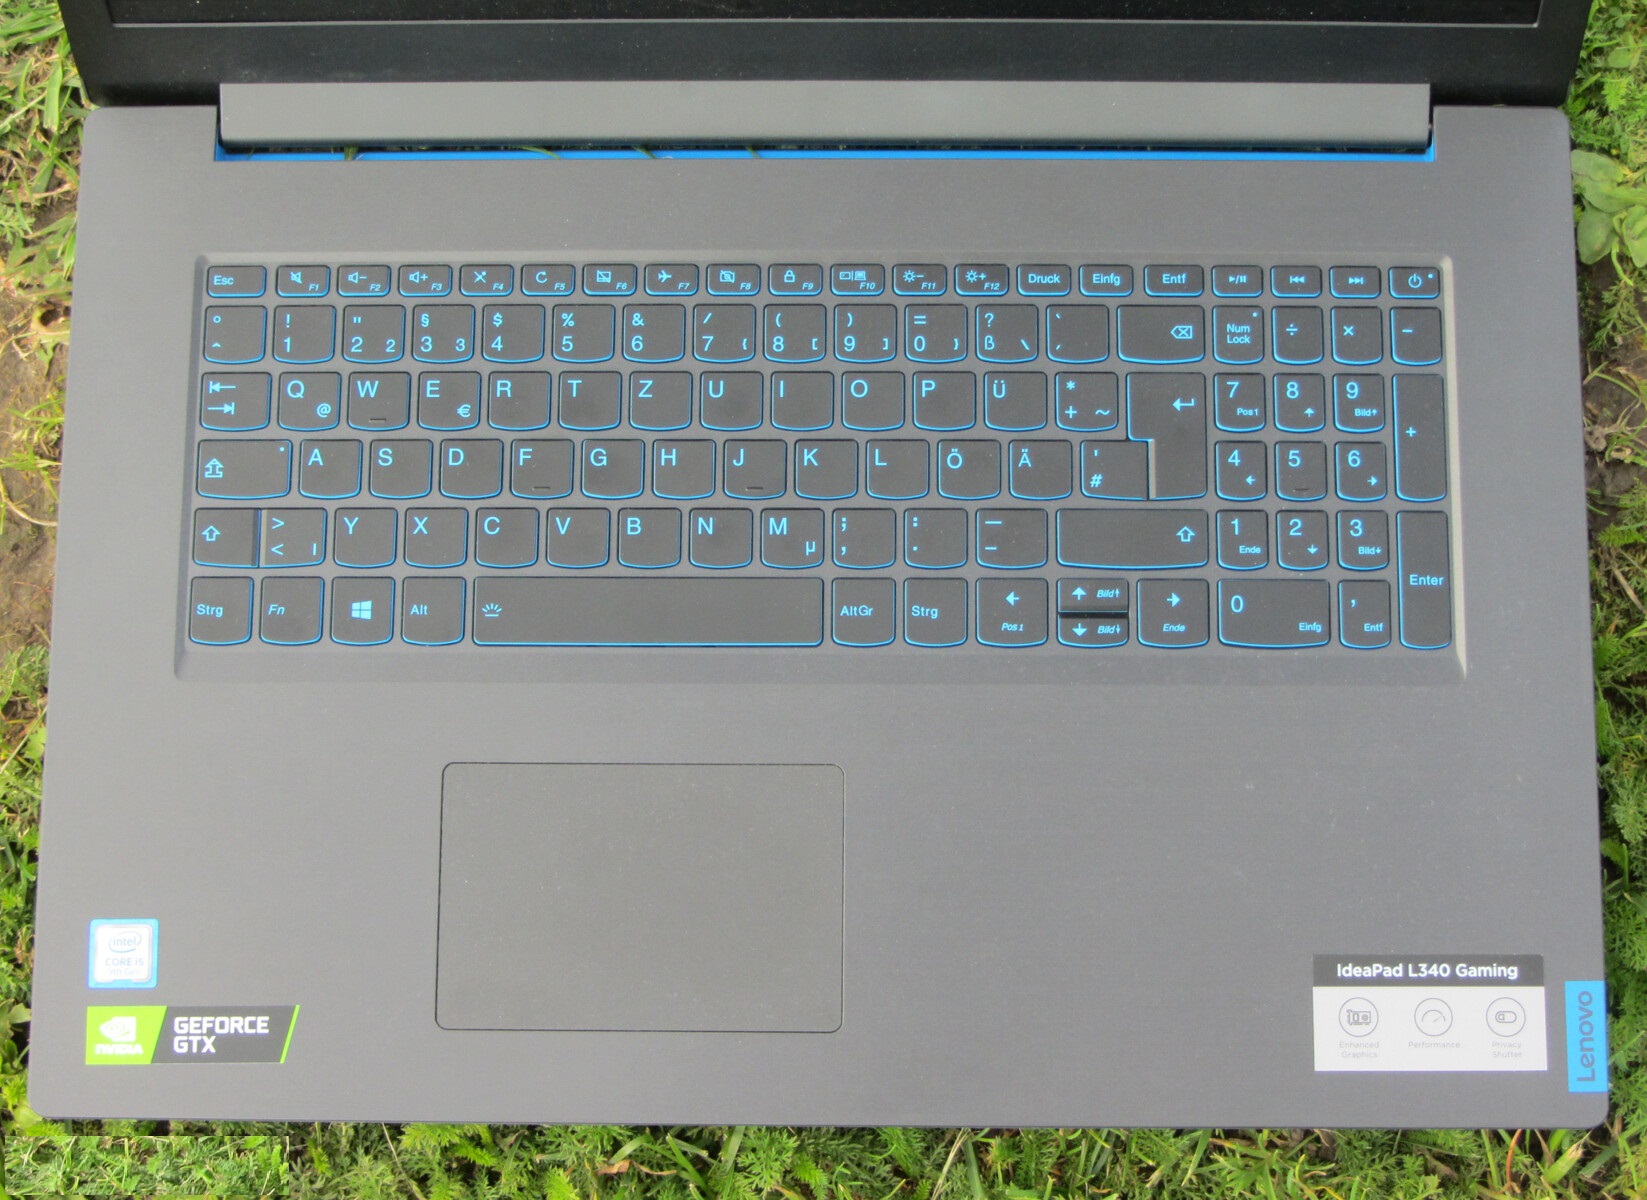 Đánh giá Lenovo Ideapad L340-17IRH: Chơi game tầm trung hoàn hảo, Chuyên trang tư vấn laptop